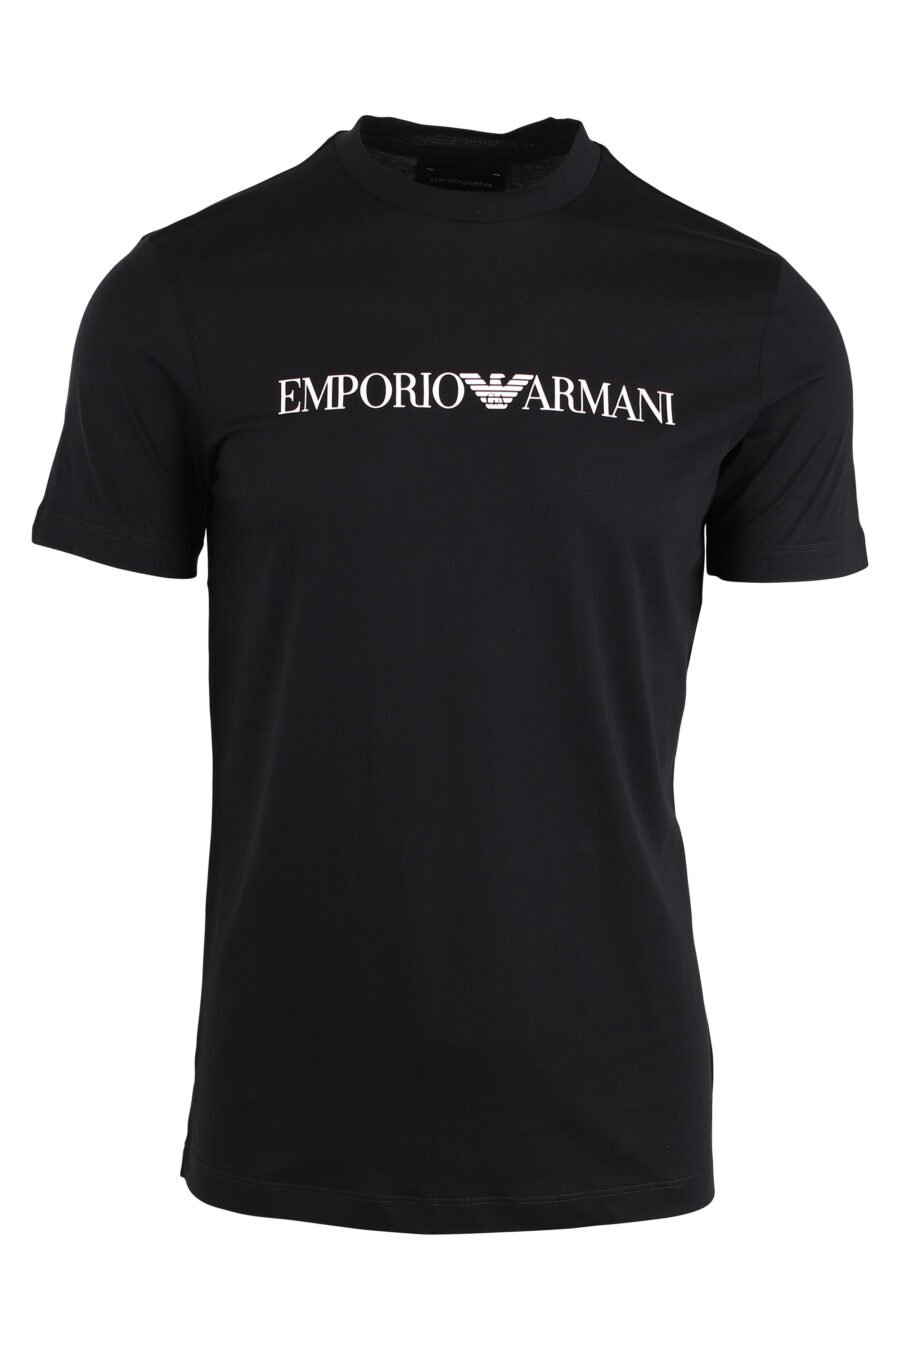 T-shirt schwarz mit weißem Schriftzug maxilogo - IMG 4250